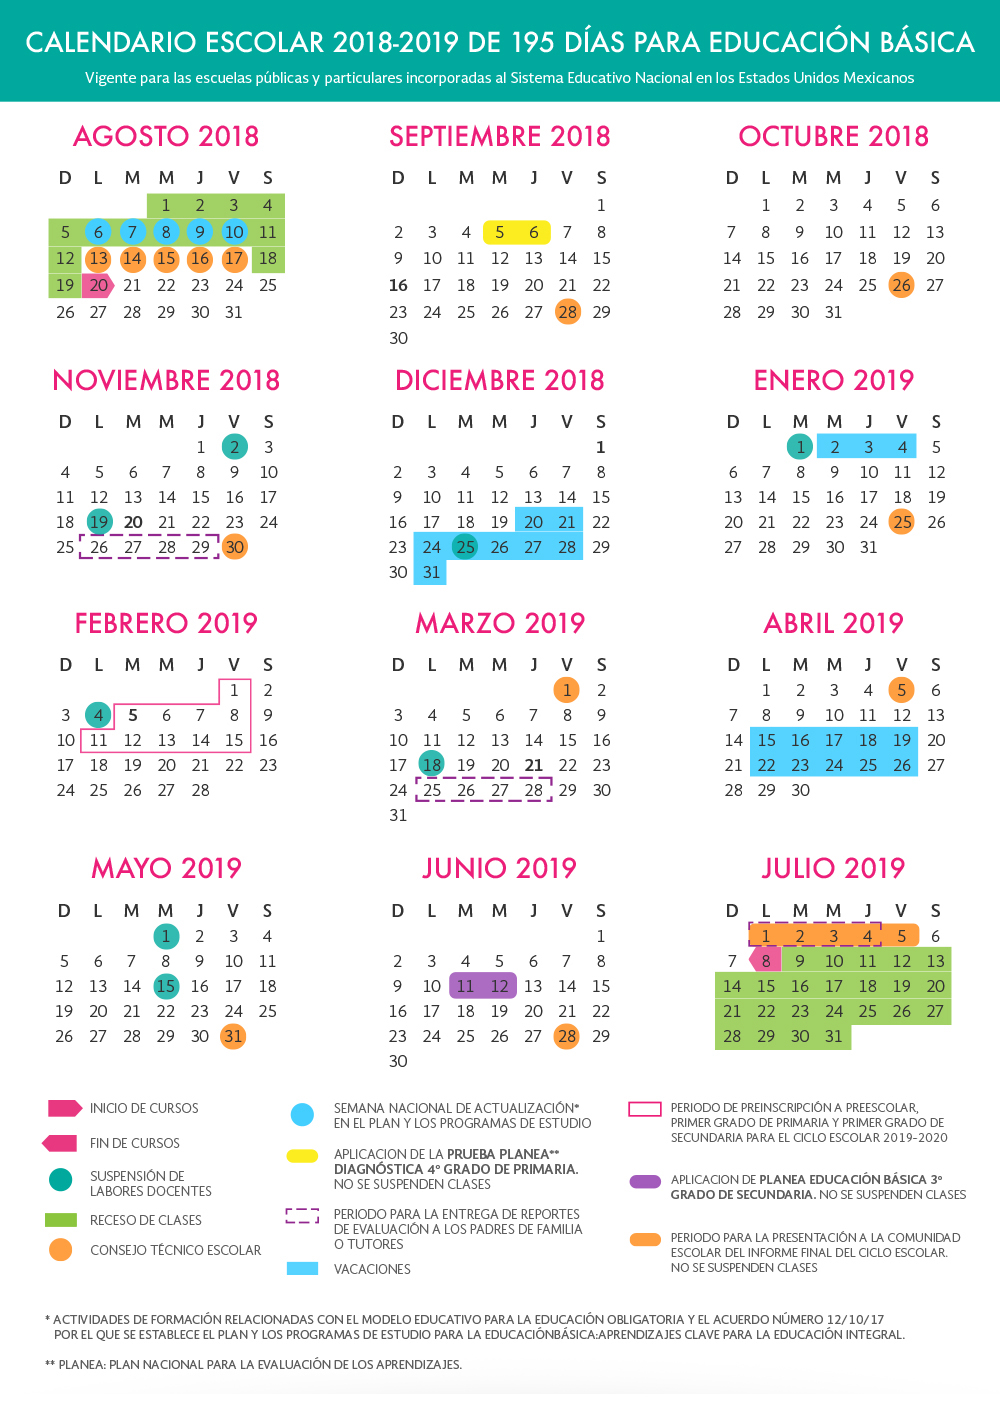 Calendarios Escolares 2018-2019 de 185, 195 y 200 días.